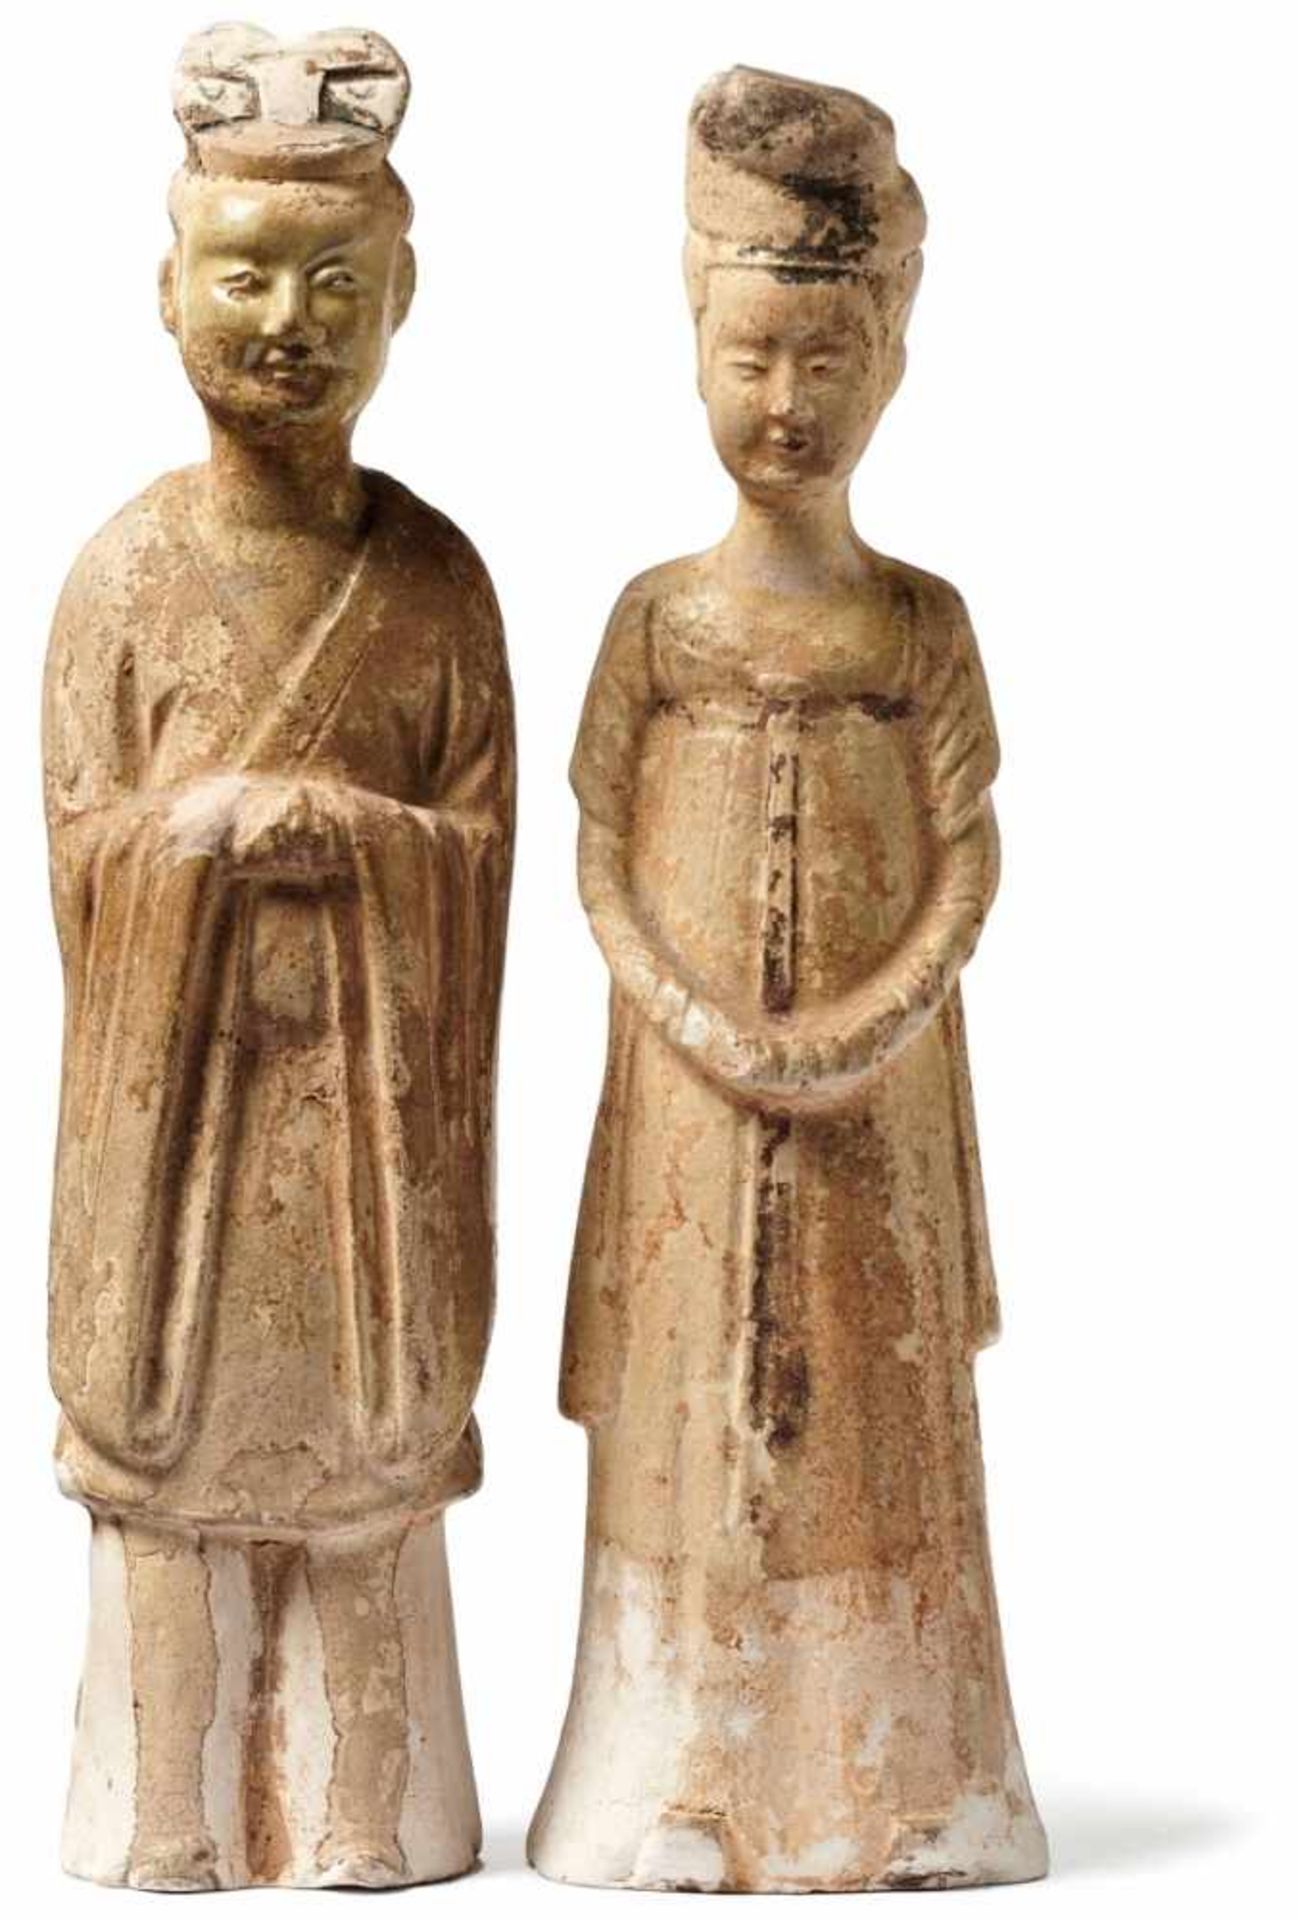 Hofdame und Beamter als GrabbeigabeChina, wohl Han-Dynastie 206 v. Chr. - 220 n. Chr.Standfiguren in